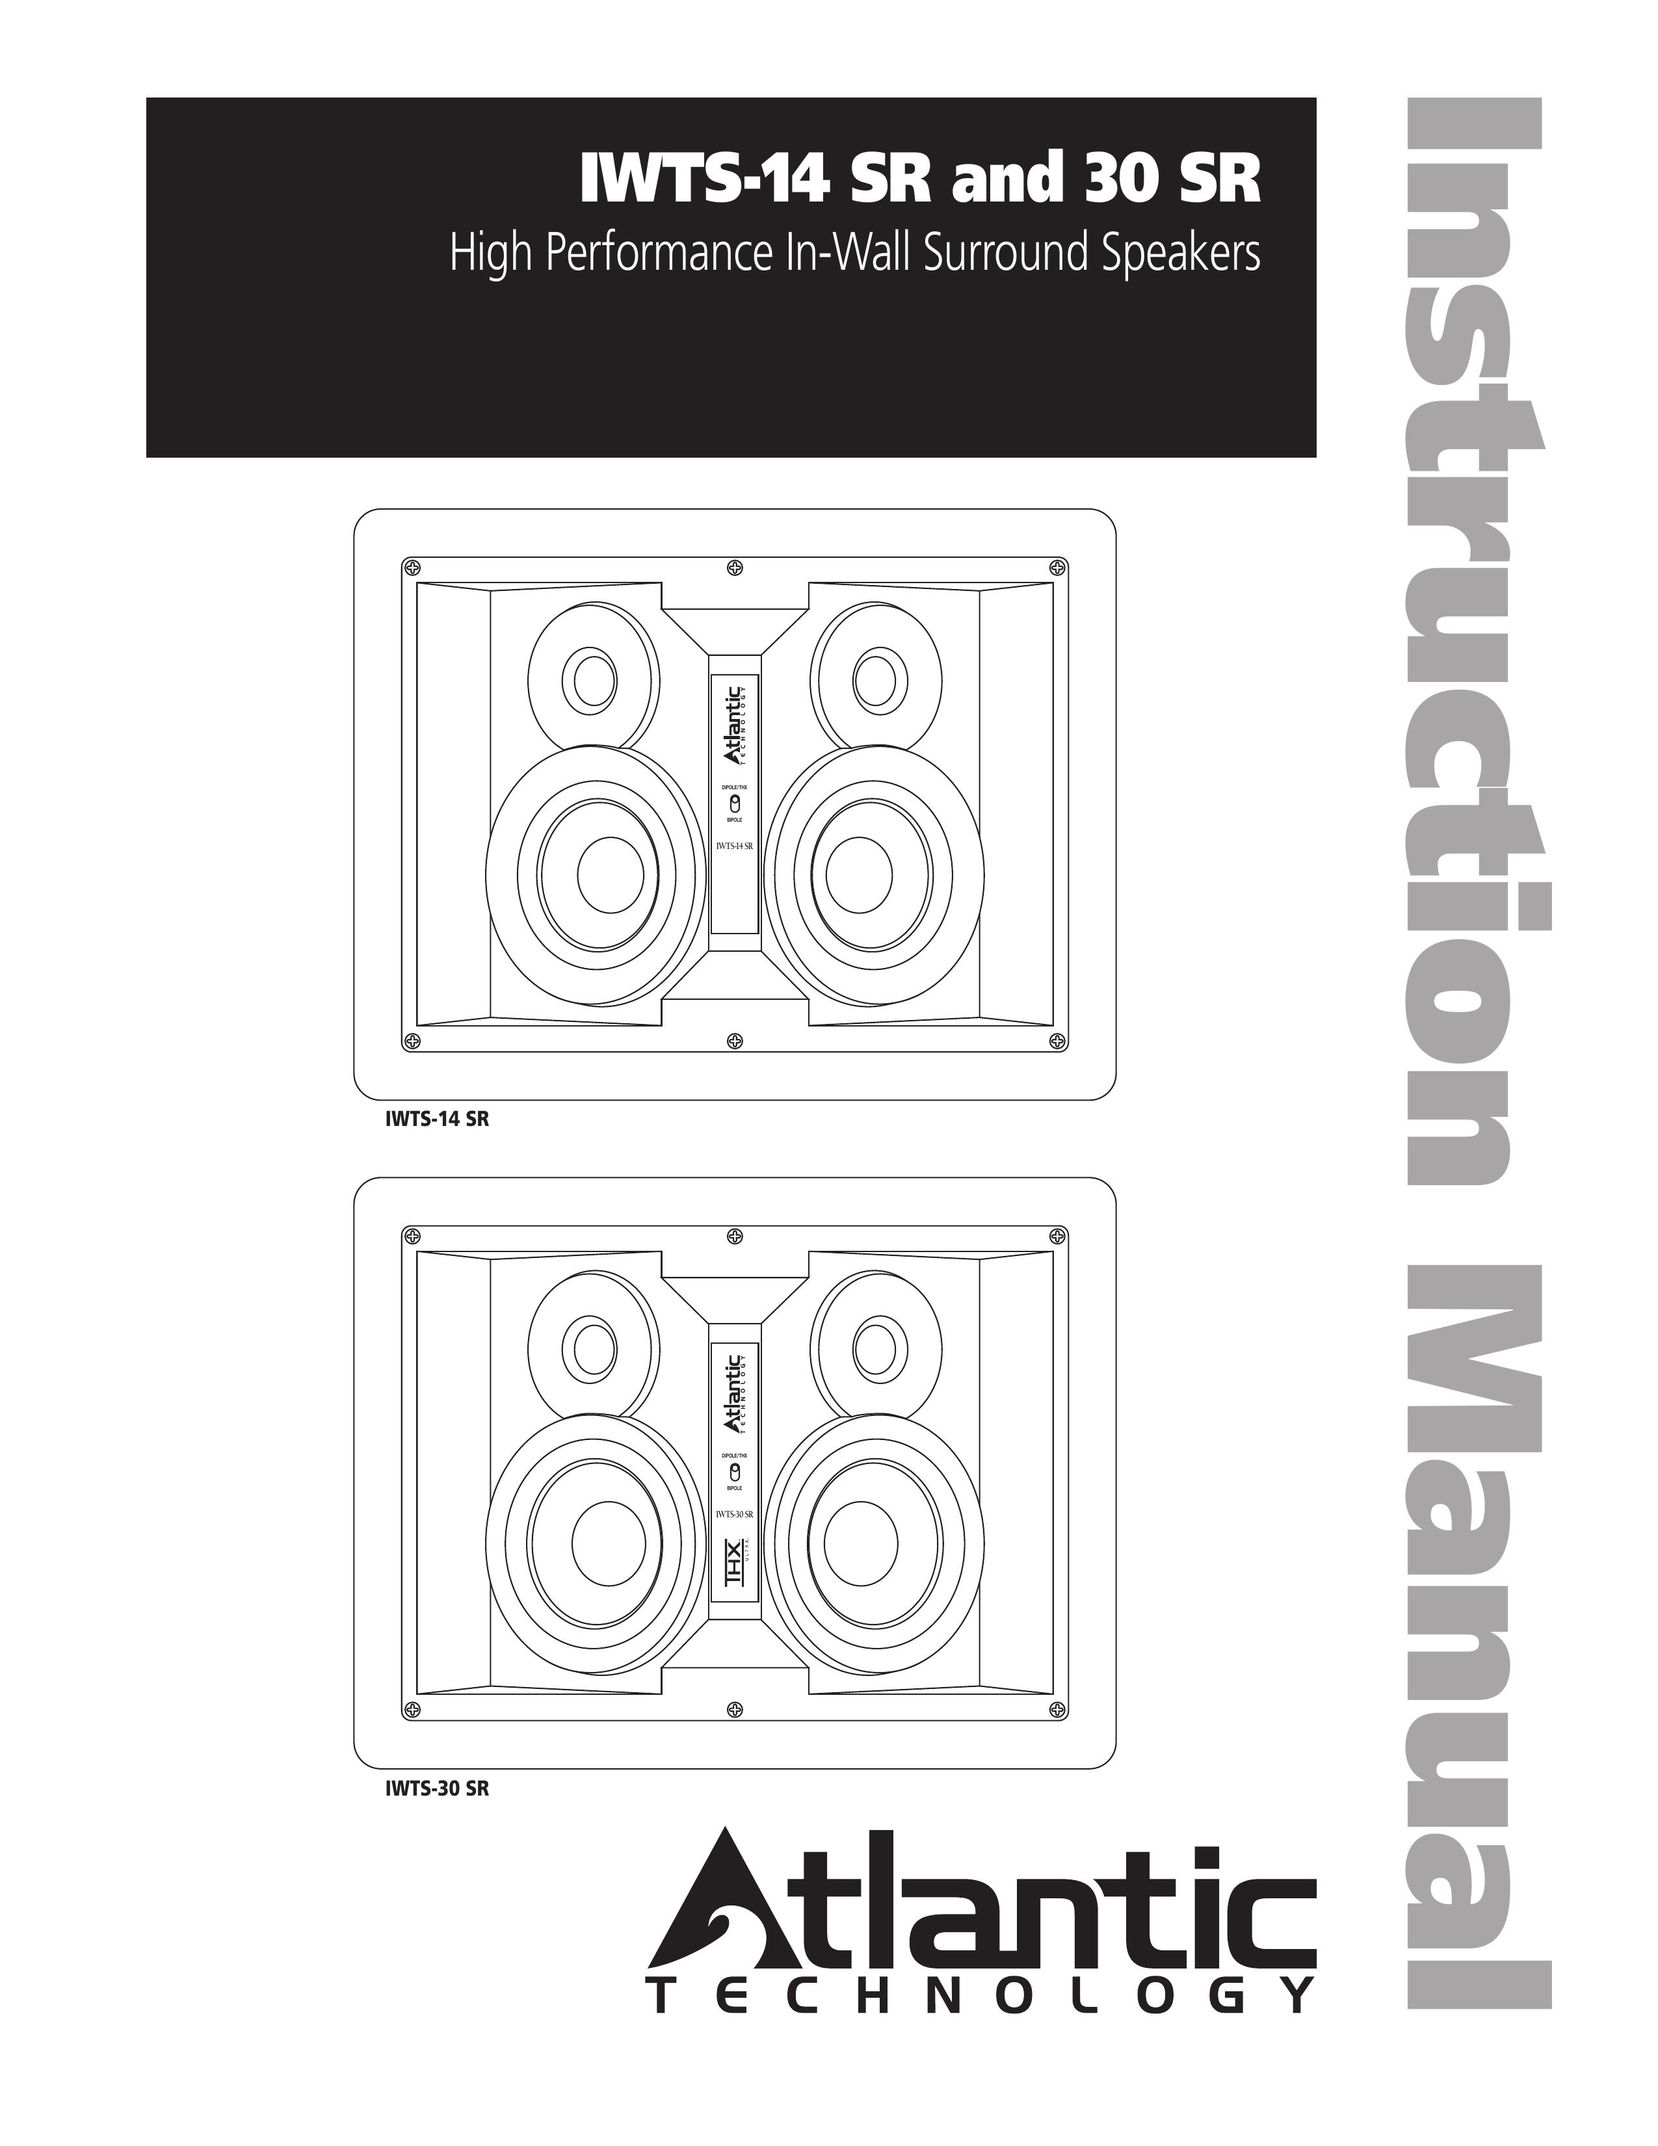 Atlantic Technology IWTS-30 SR Car Speaker User Manual